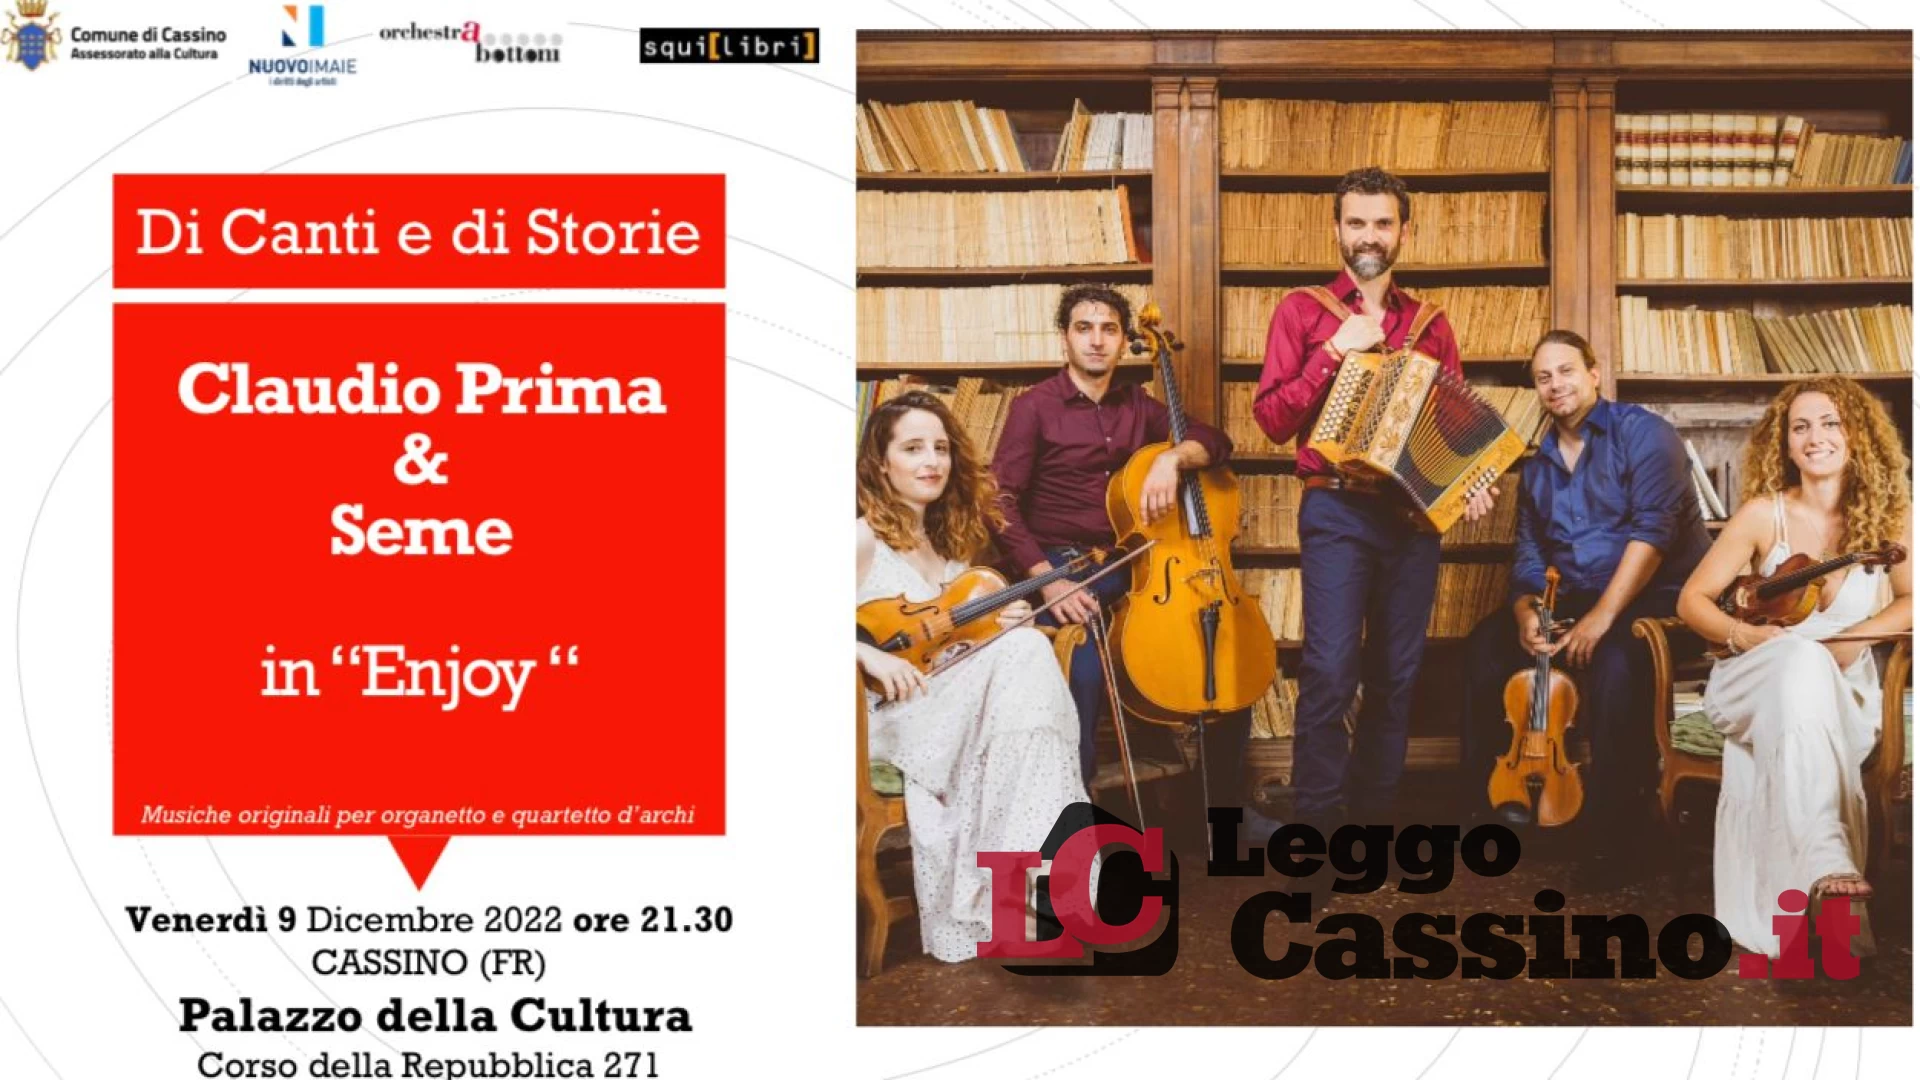 Al Palazzo della Cultura l'esibizione Enjoy del gruppo musicale Claudio Prima & Seme